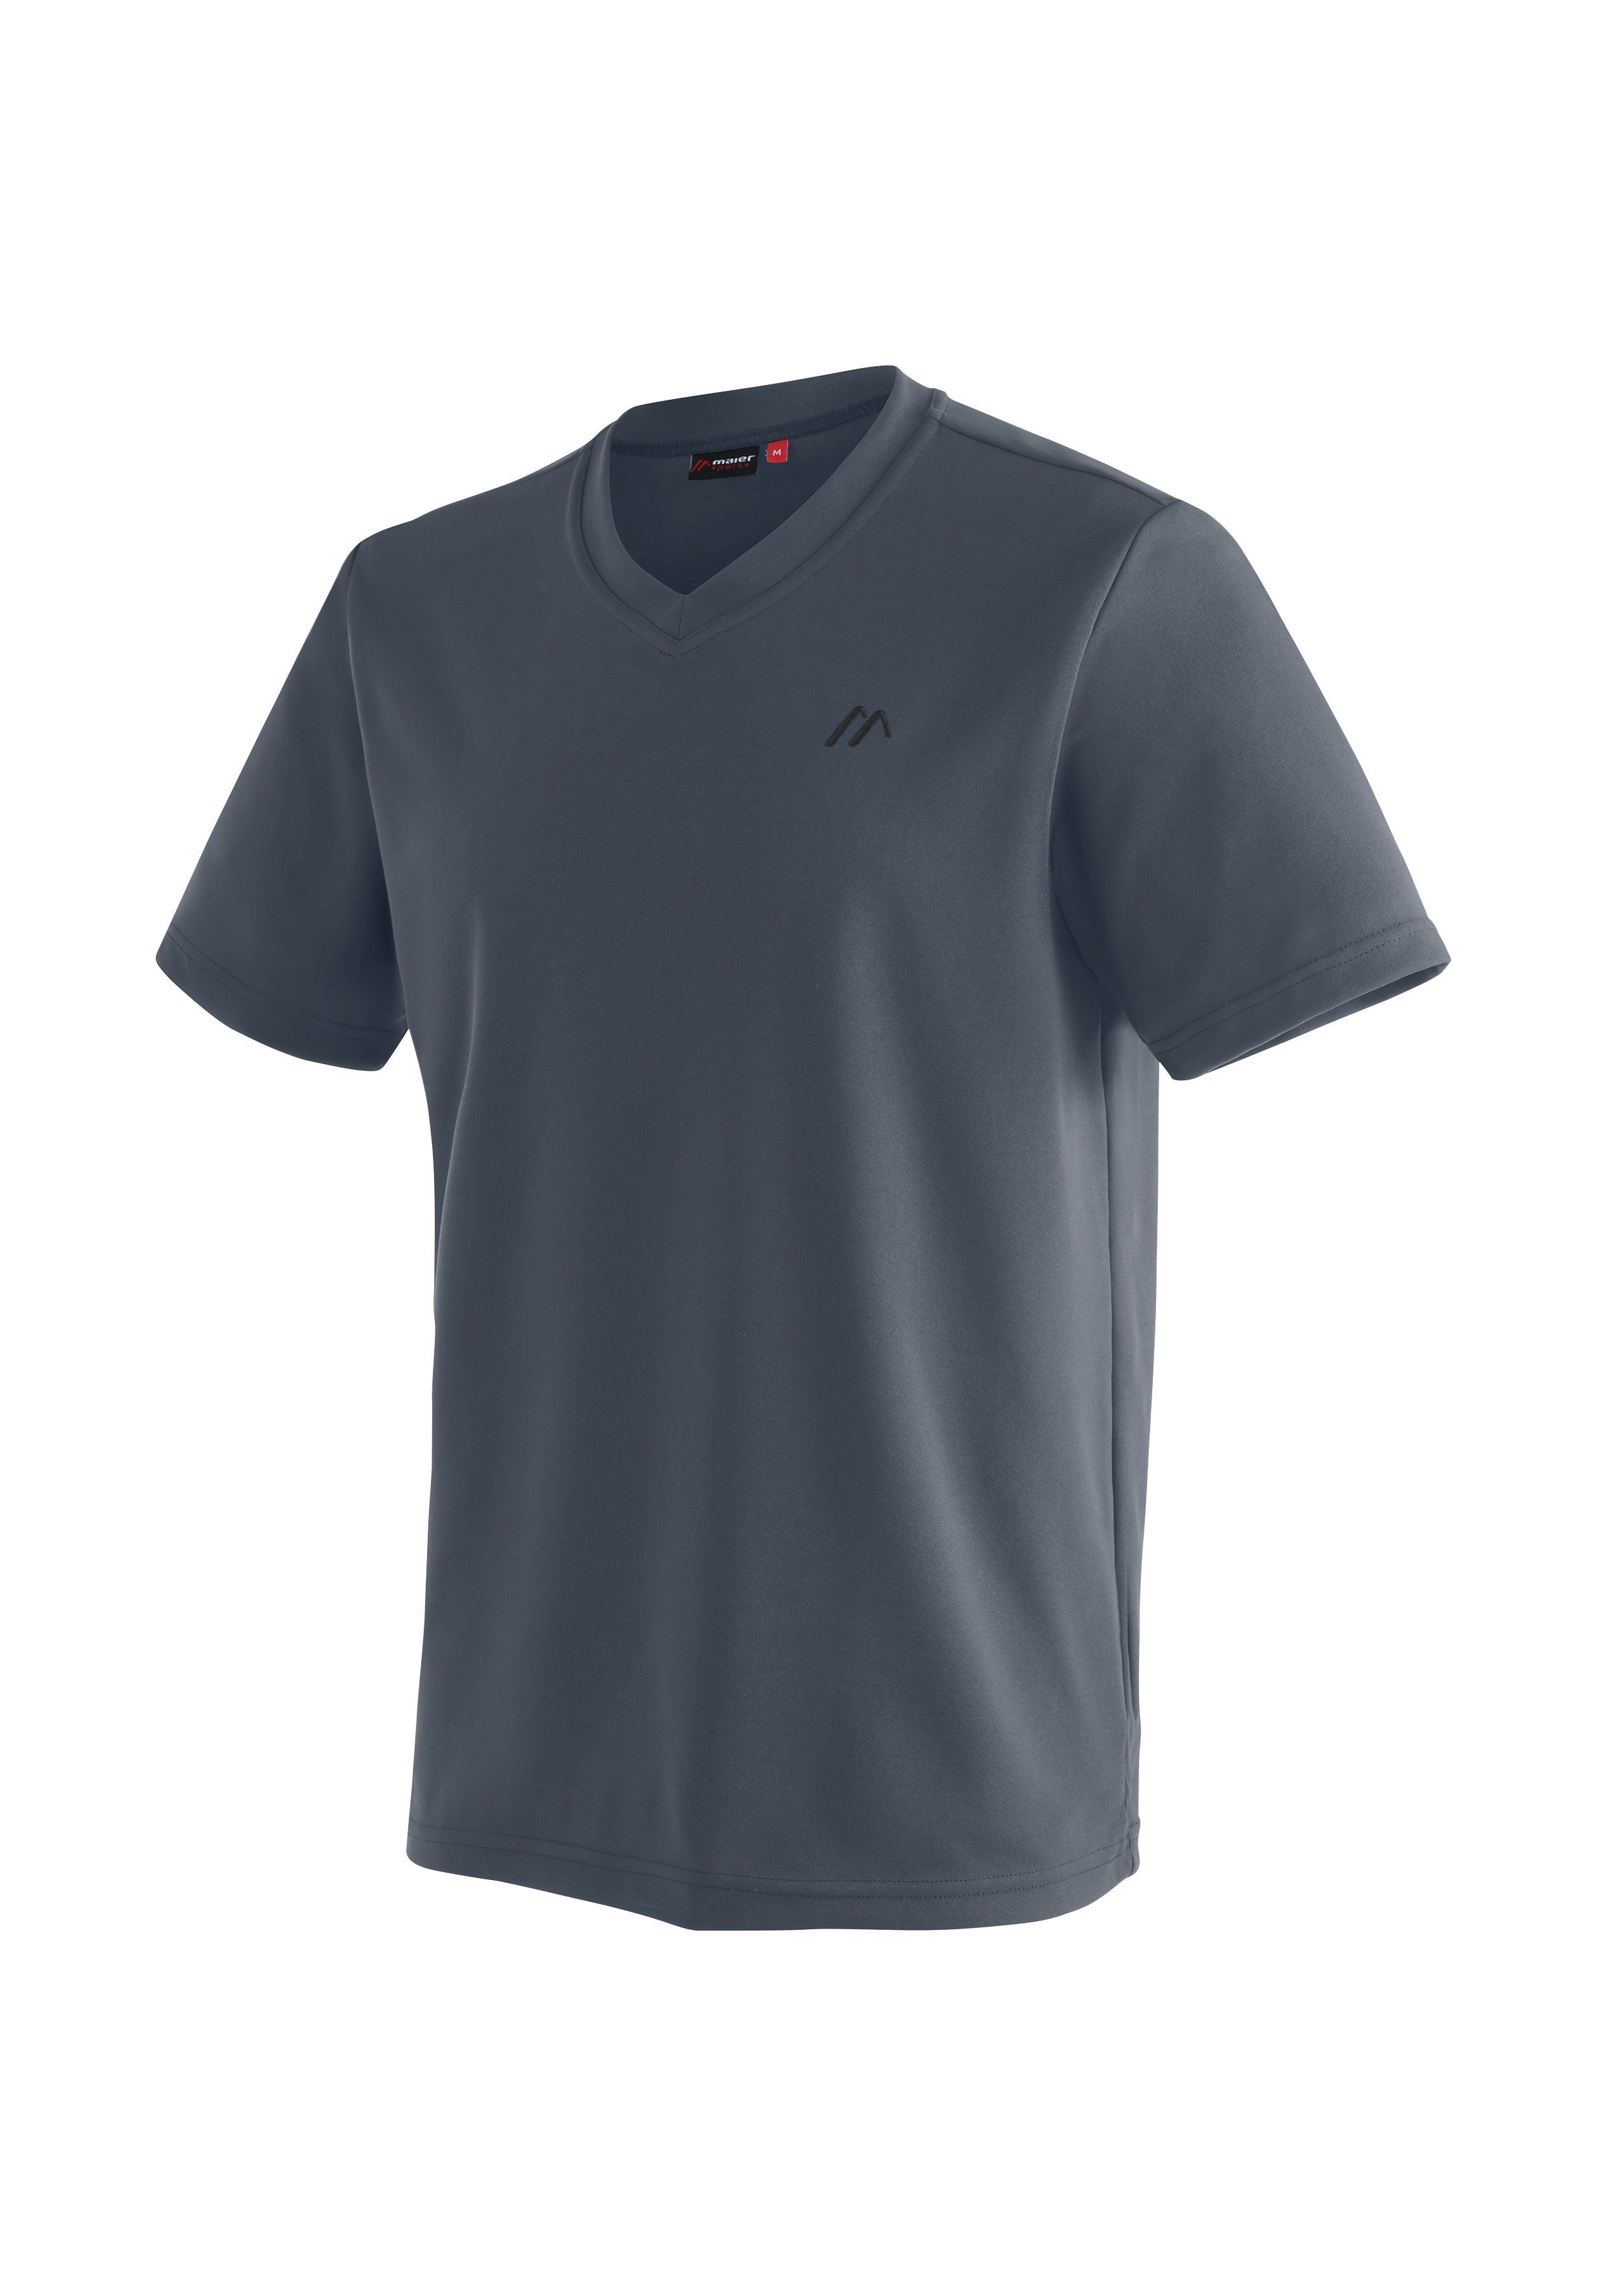 Herren Sports Wandern Wali und Freizeit Maier für Funktionsshirt T-Shirt, Kurzarmshirt grau